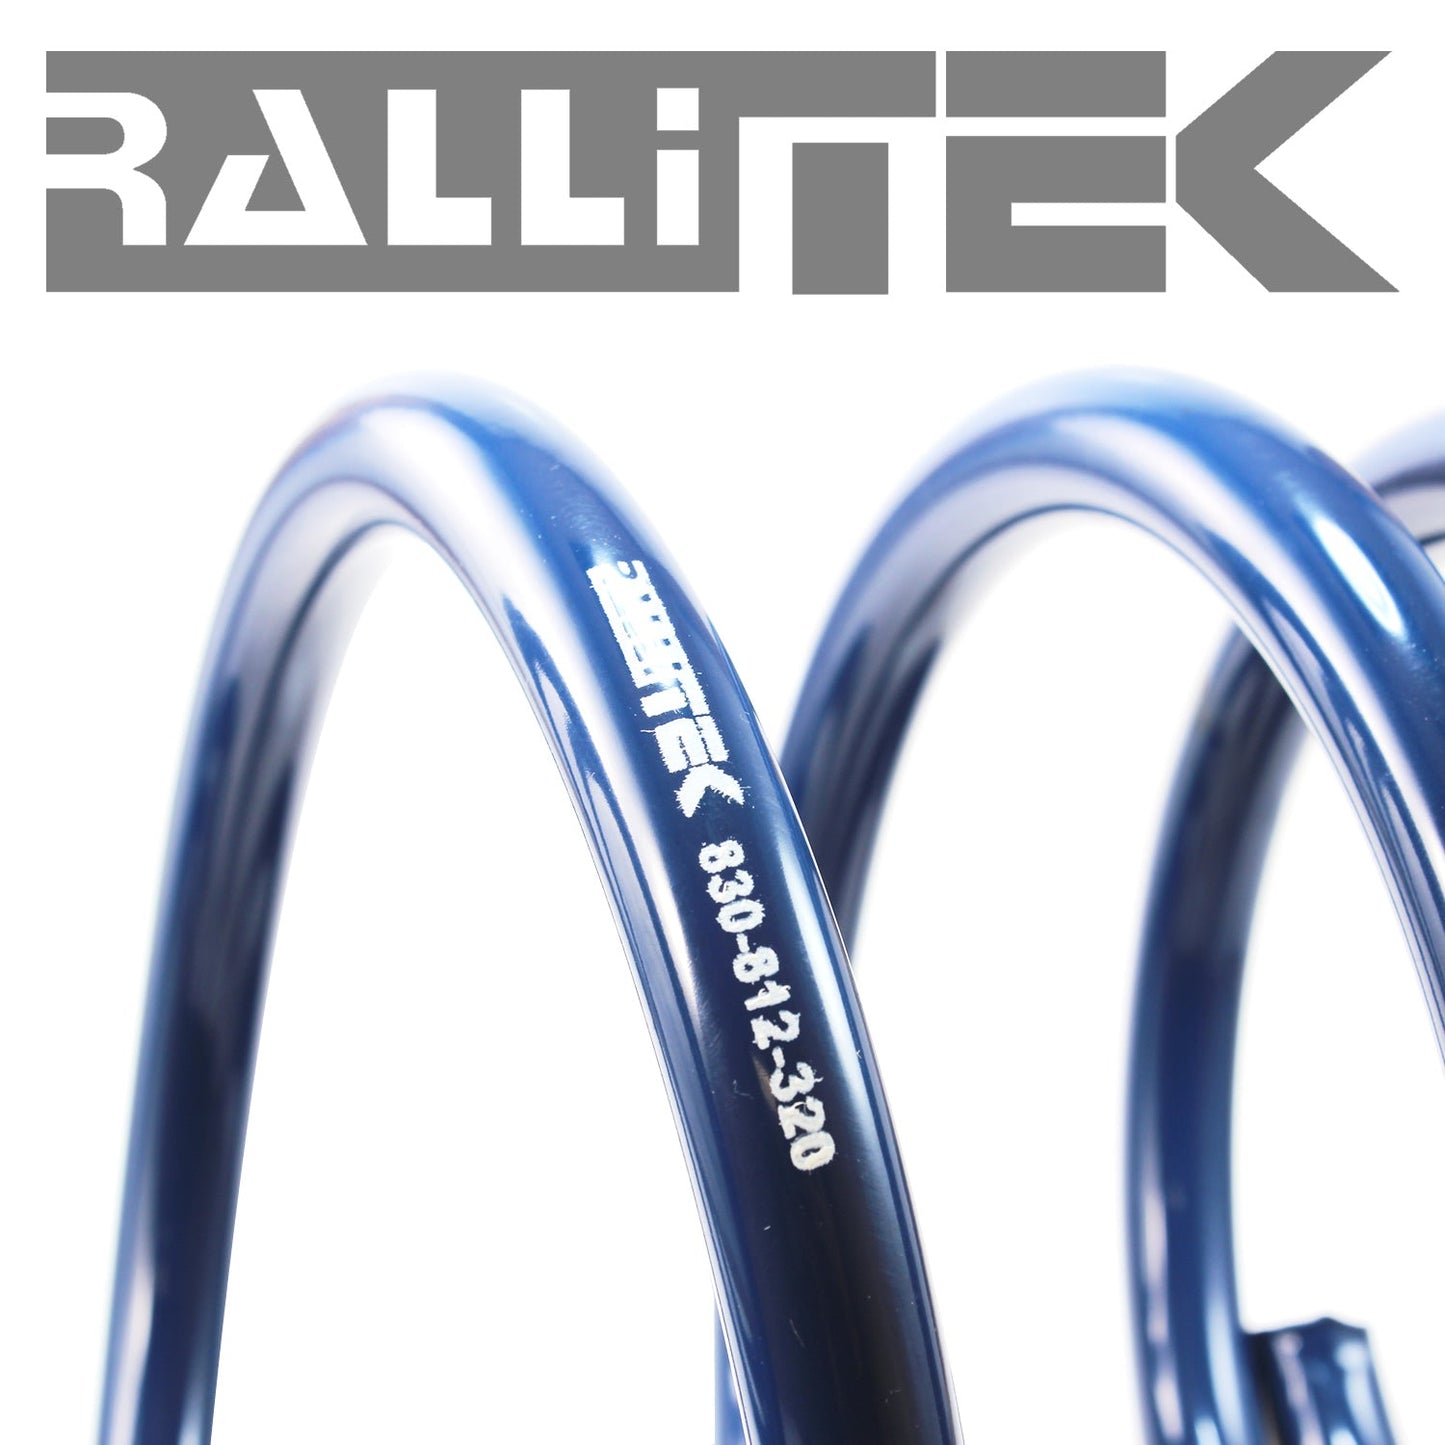 RalliTEK 1.25" Front Raised Sport Spring Kit - Crosstrek XV 2013-2017